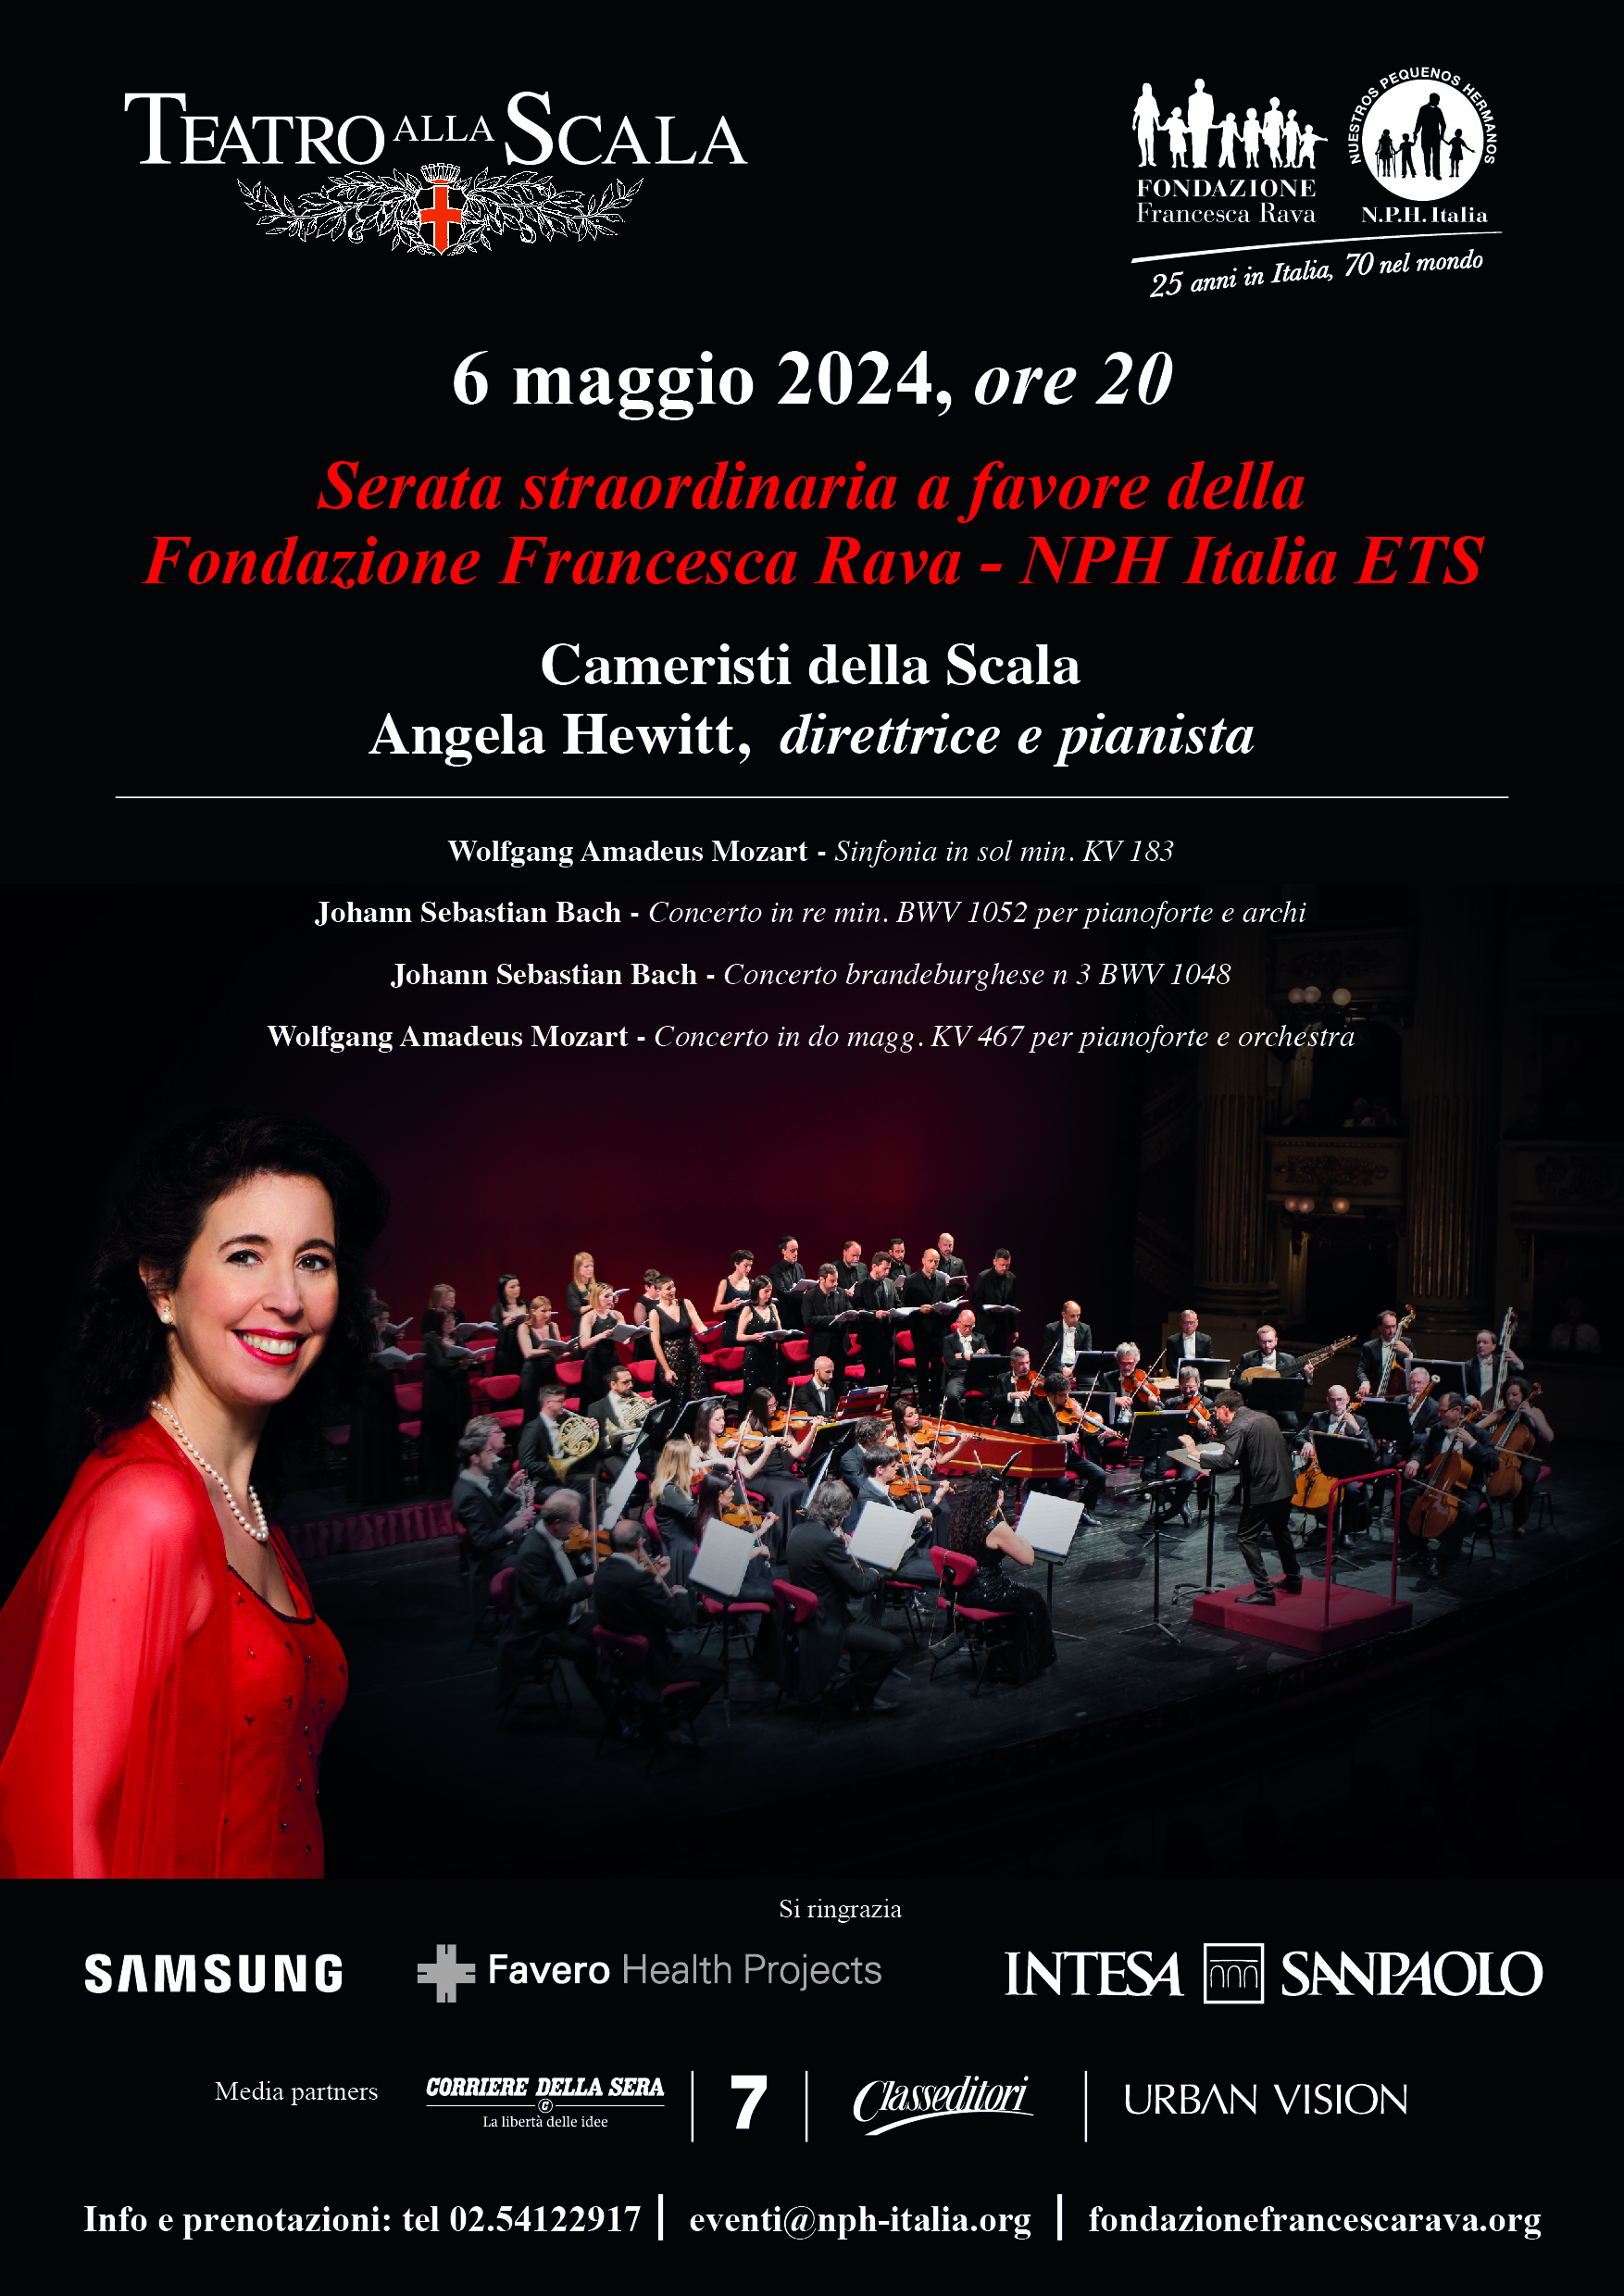 6 maggio, Teatro Alla Scala, serata straordinaria a favore della Fondazione Francesca Rava. Sul palco i Cameristi della Scala e Angela Hewitt, Pianista e Direttrice